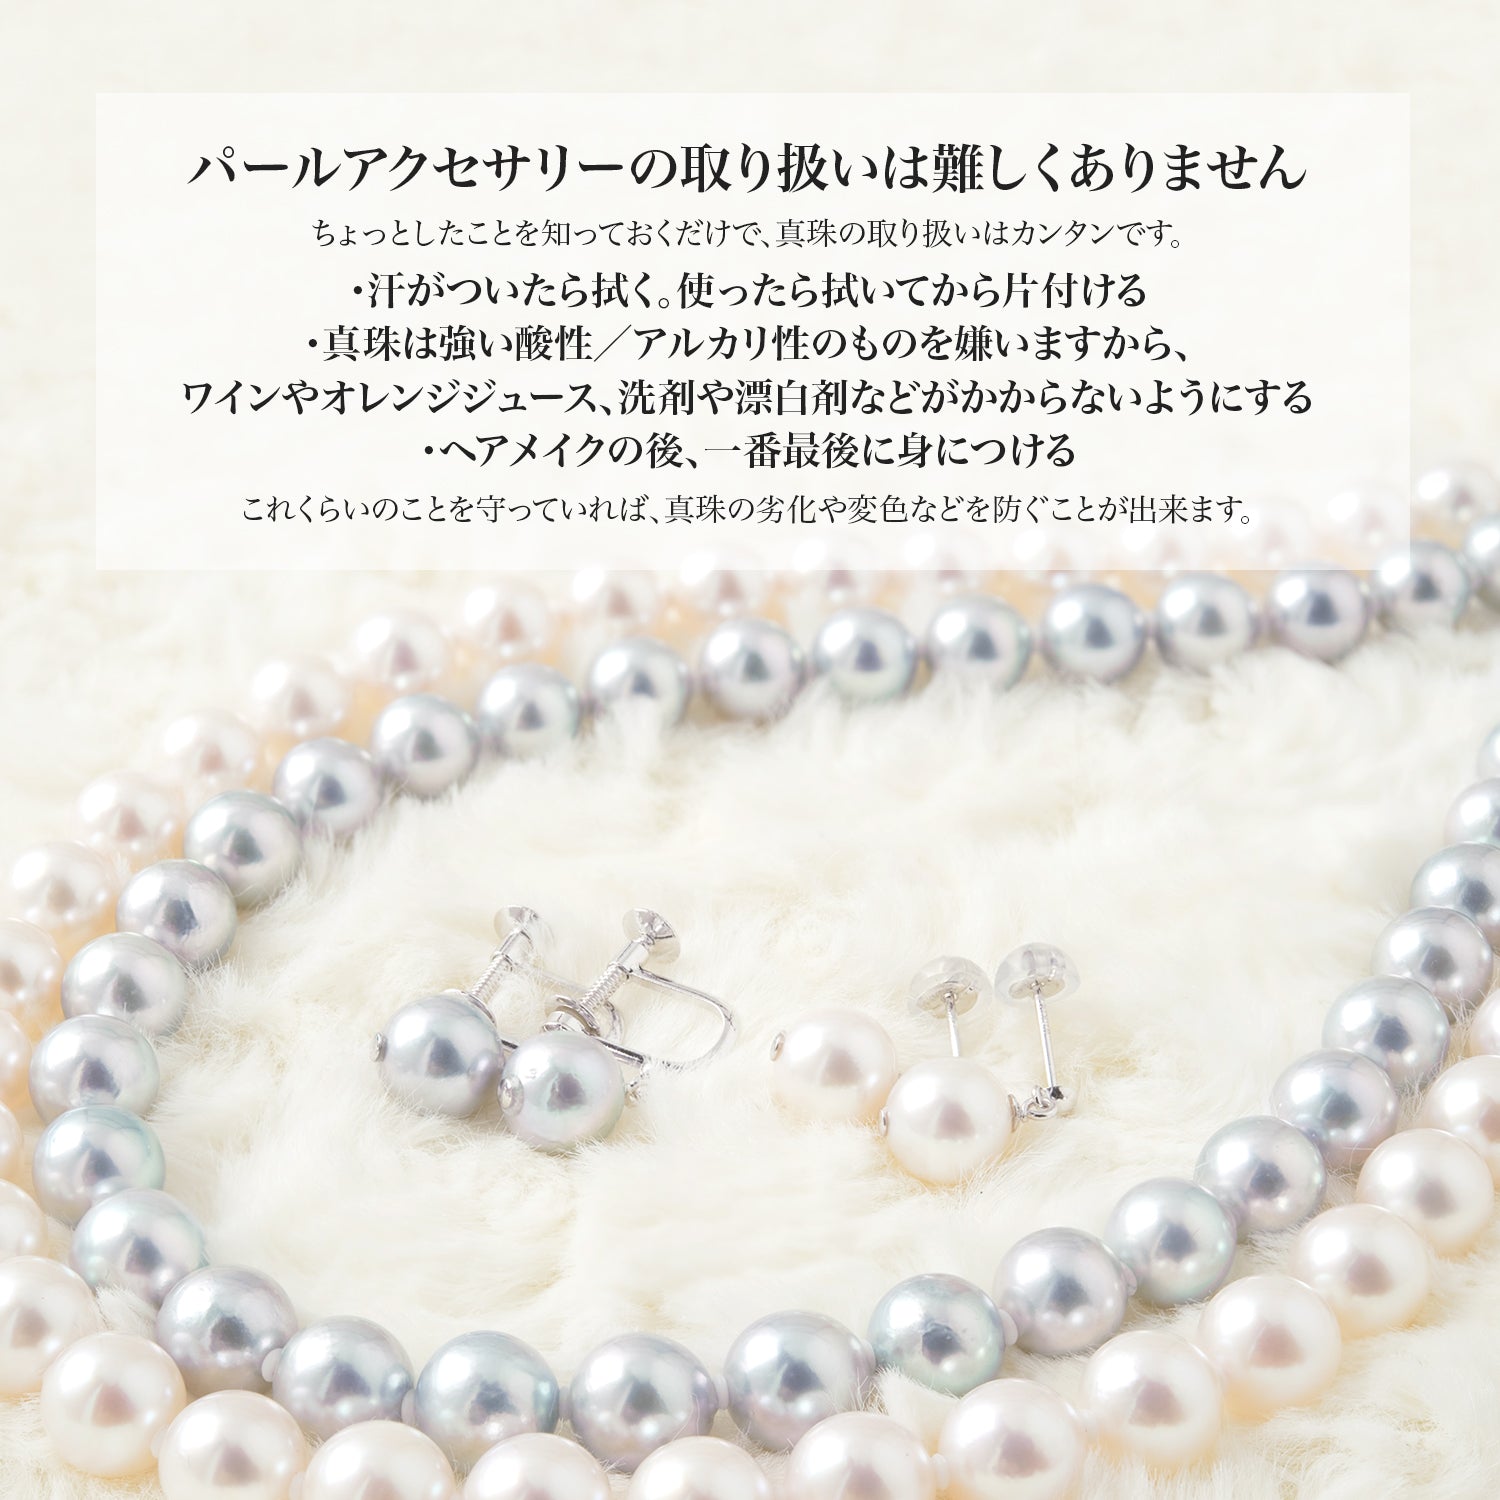 [灰色] Akoya 珍珠正装项链 2 件套耳环/穿孔耳环 [8.5-9.0 毫米] 仪式场合真品证书和收纳盒 [数量有限]